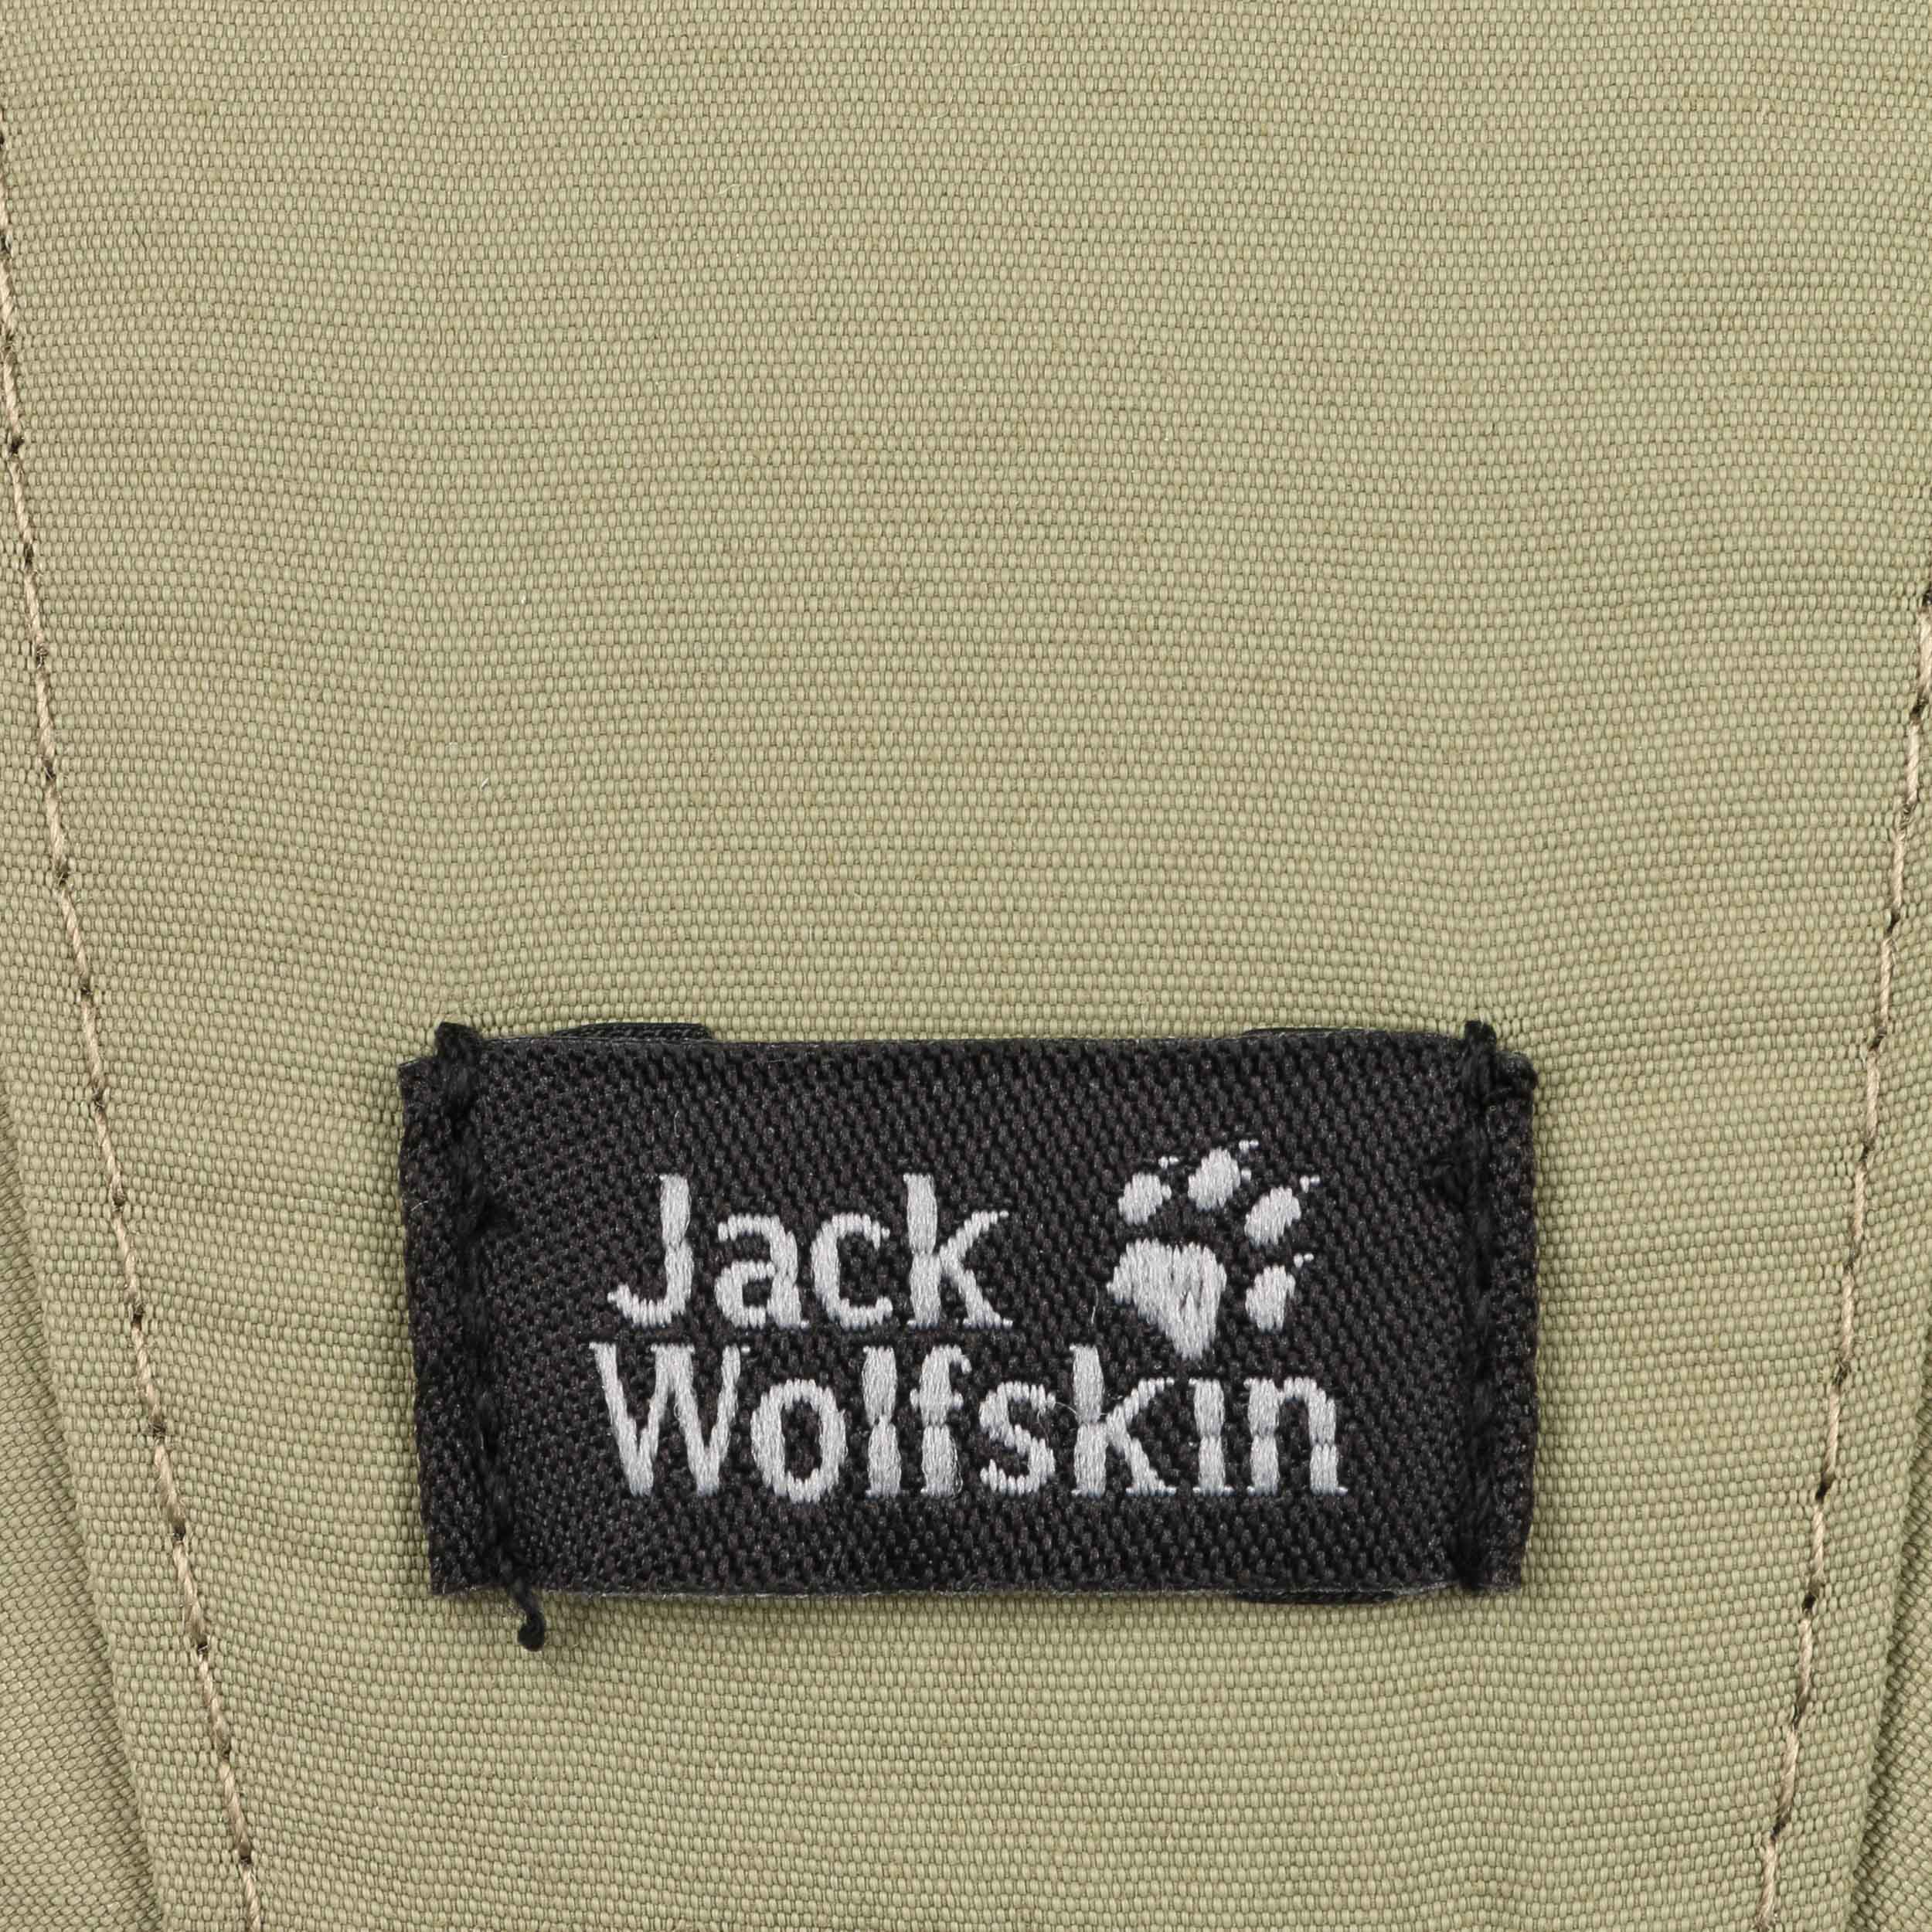 Wolfskin € Vent Cap - Supplex Jack Pro by 32,95